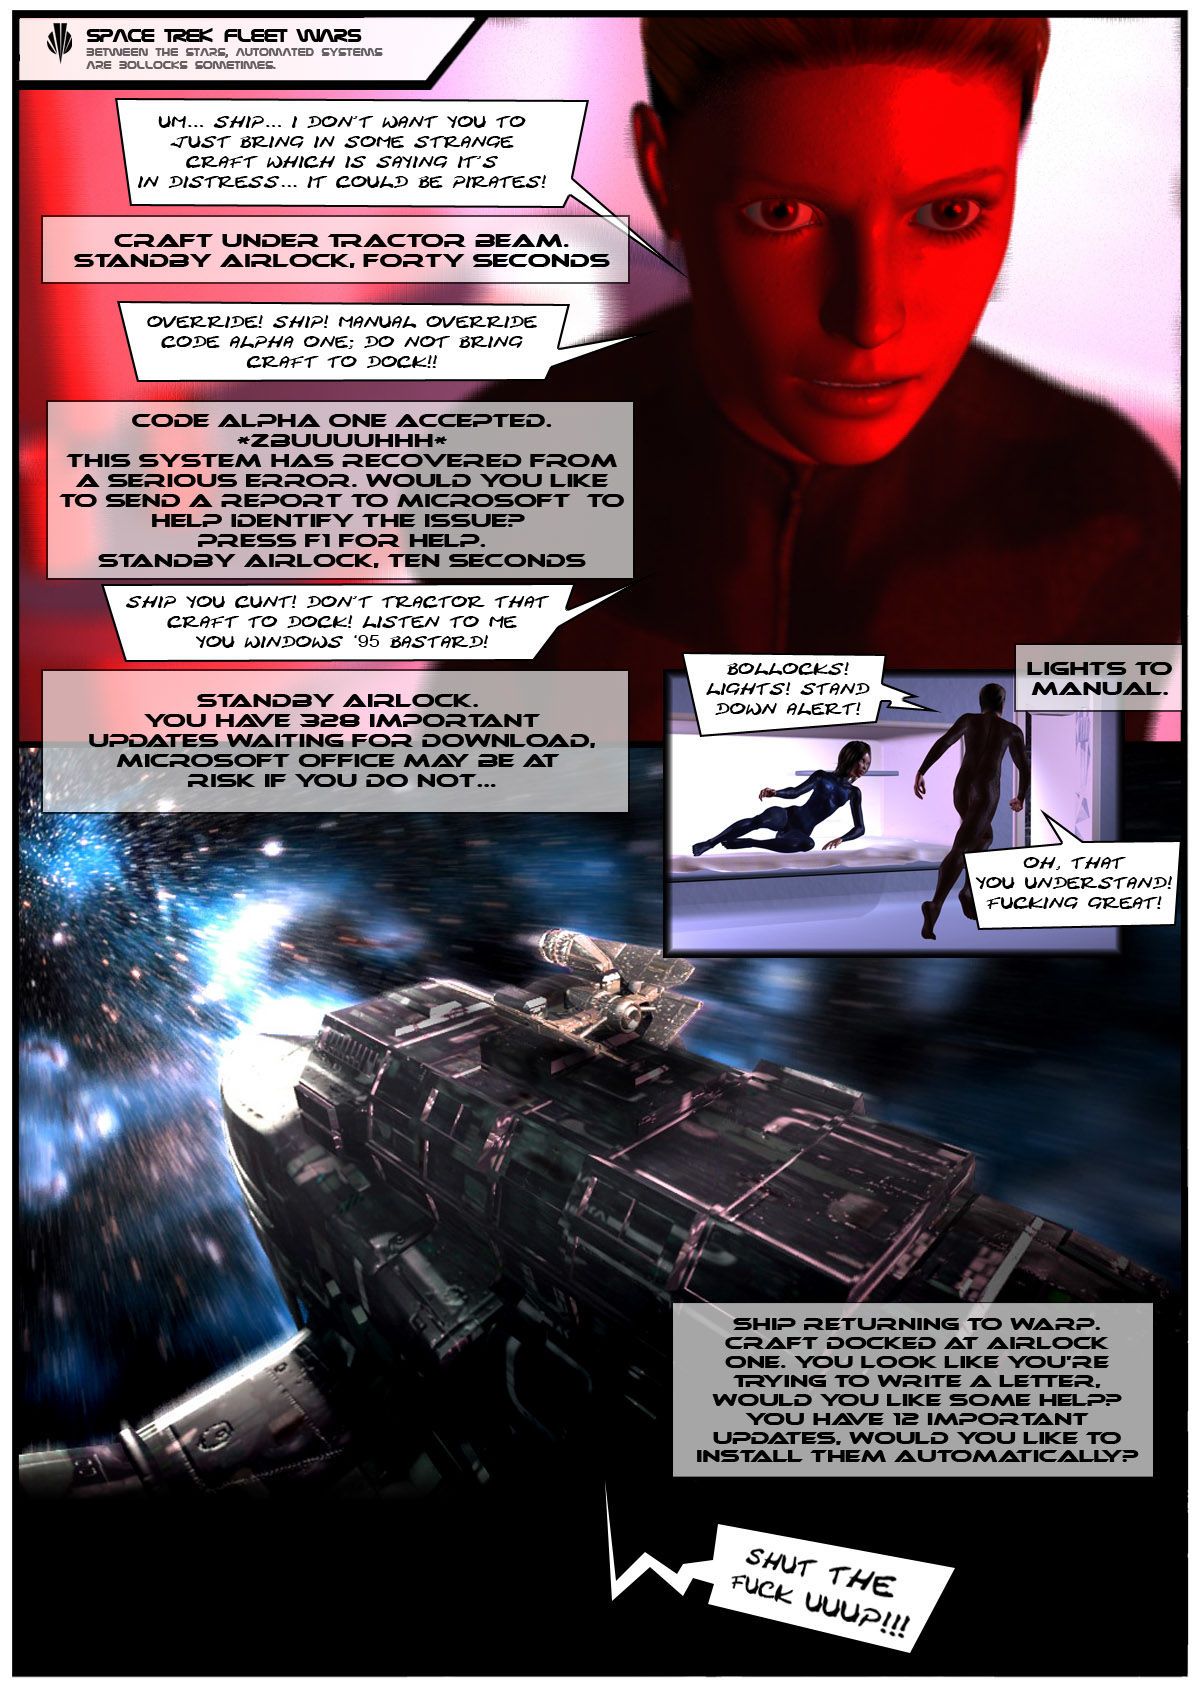 01 Space Trek Fleet Wars - part 2